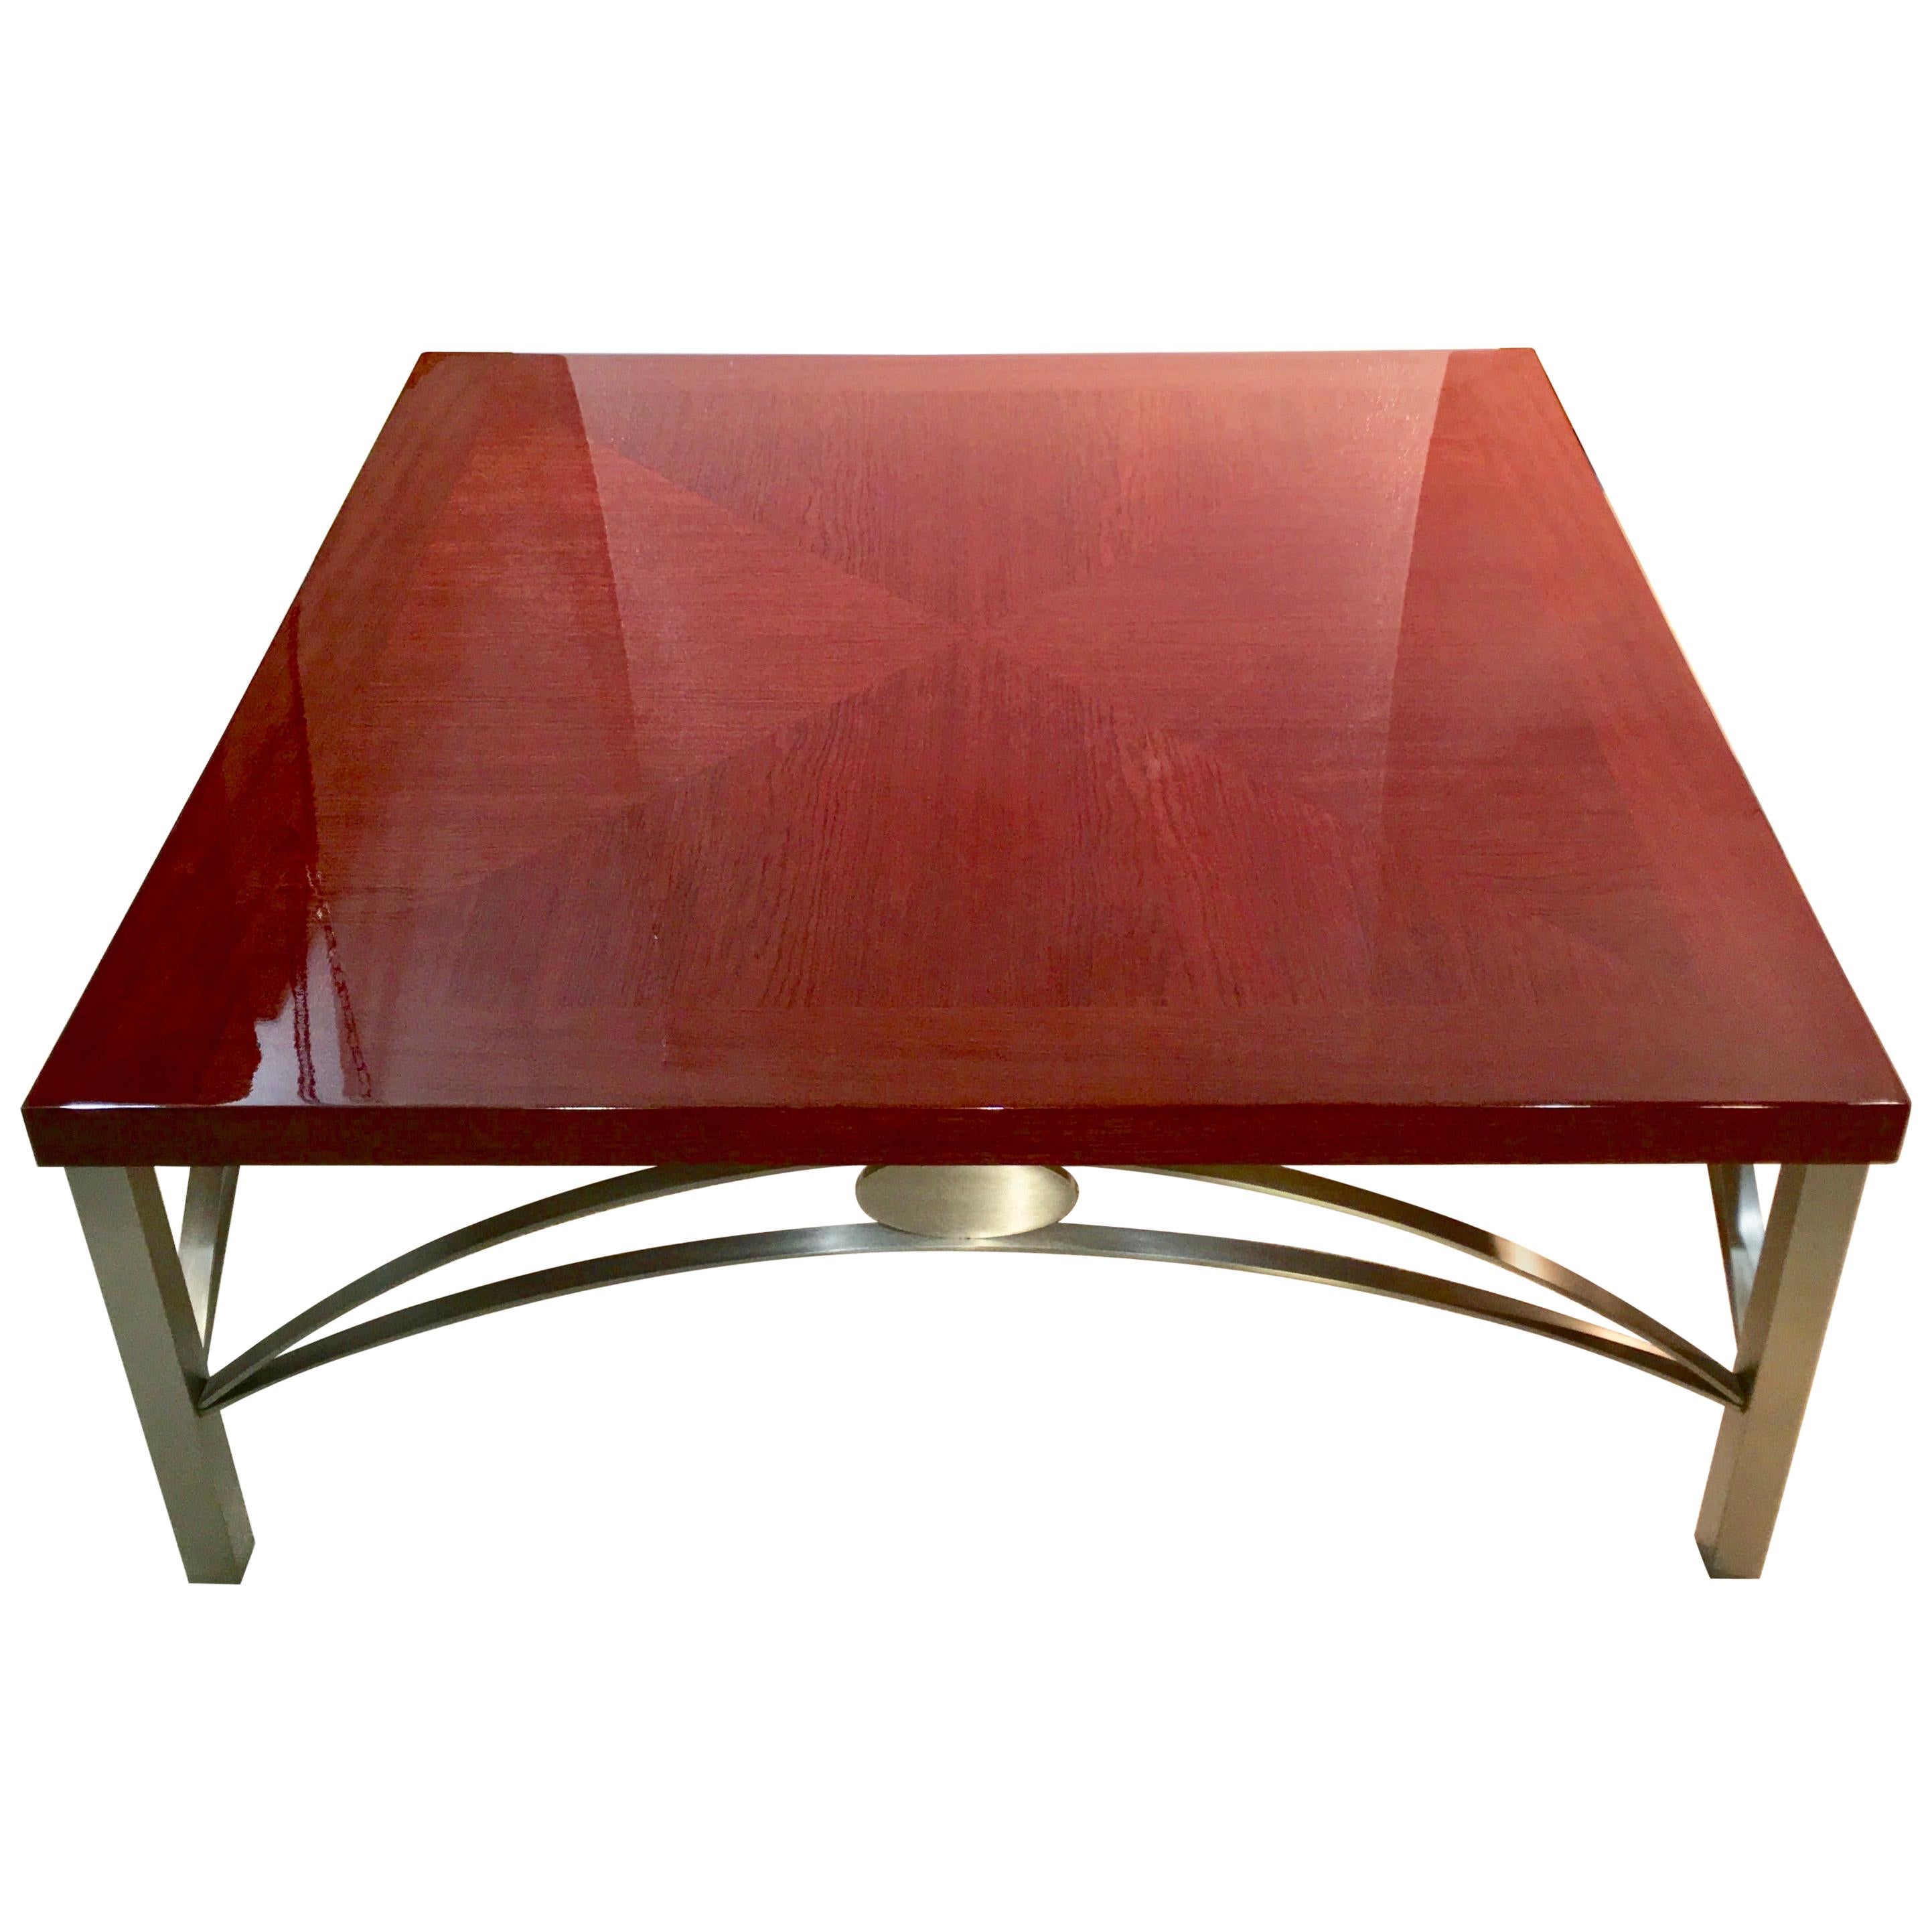 Table à cocktail carrée Padauk et acier inoxydable de designer